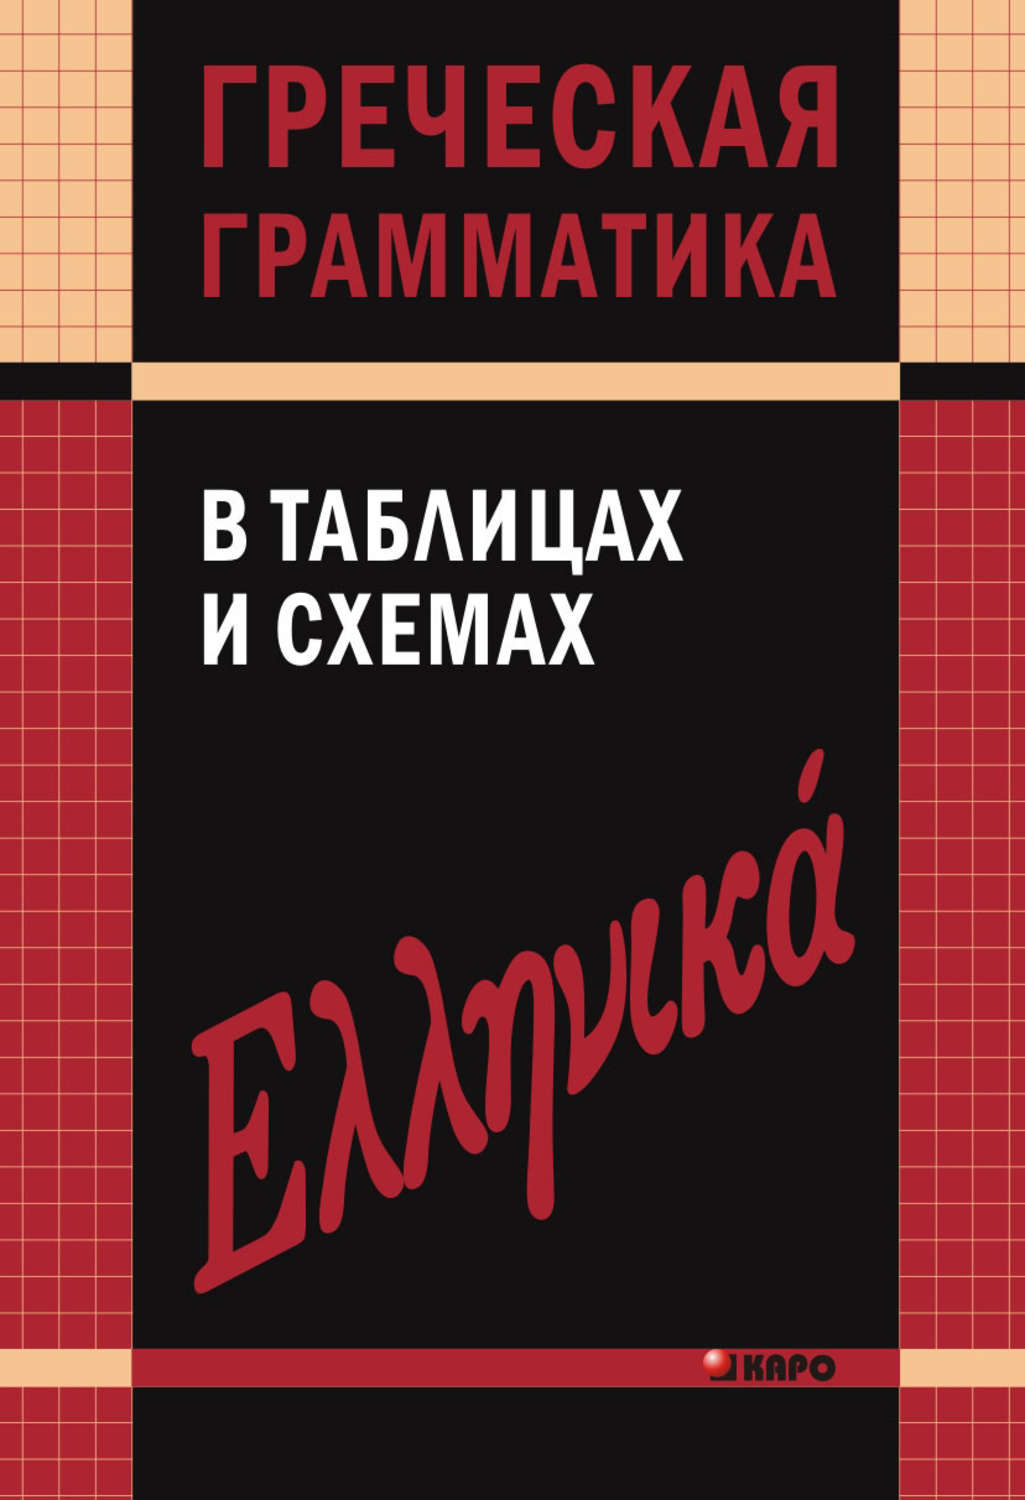 Учебник греческого языка скачать бесплатно fb2